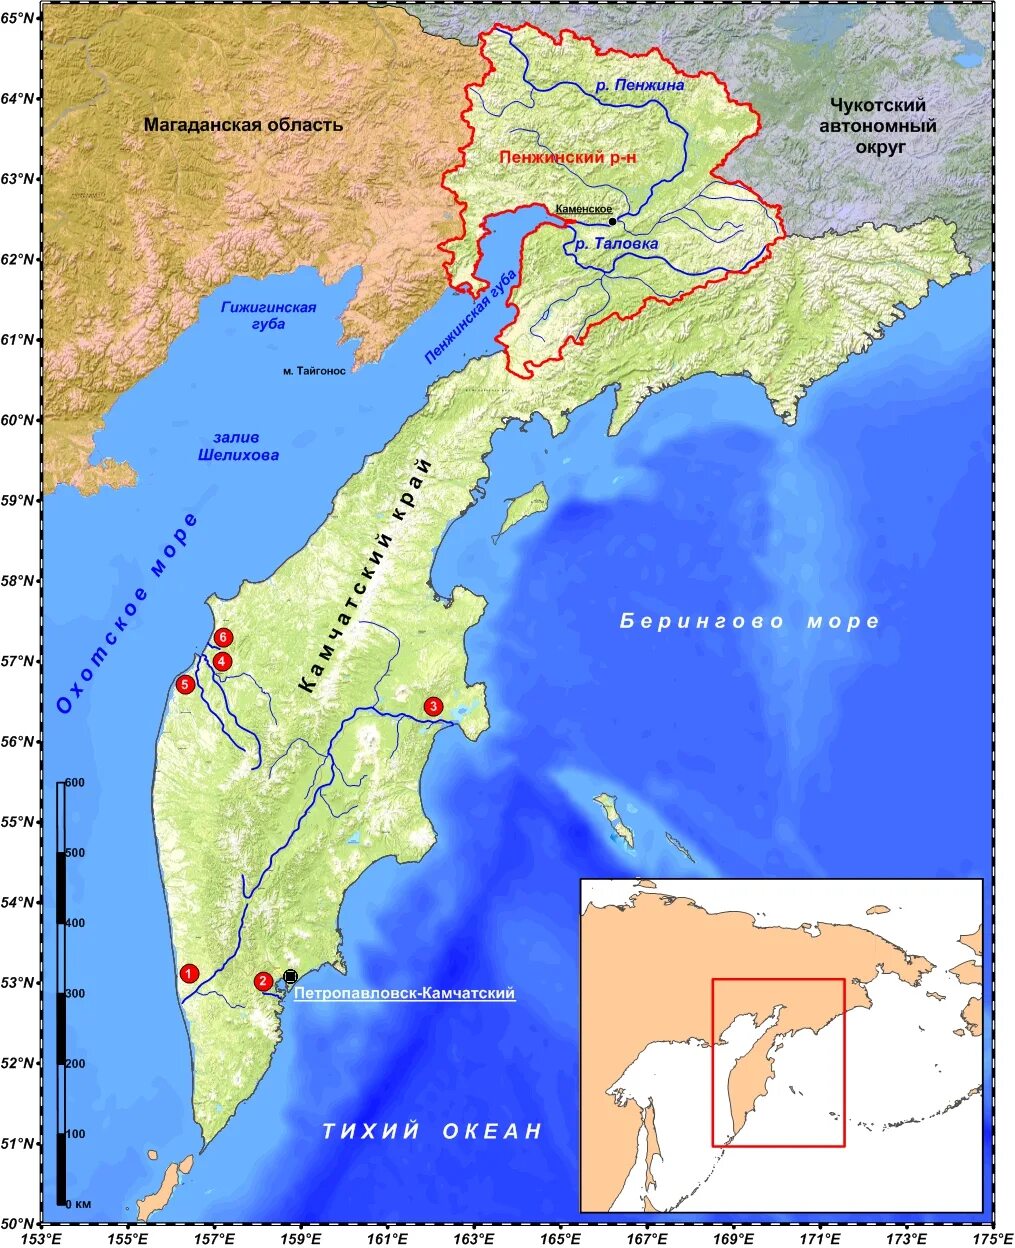 Показать карту где находится камчатка. Пенжинская губа залив на карте России. Пенжинская губа залив на карте. Пенжинская губа Охотского моря на карте. Пенжинская губа в заливе Шелихова.